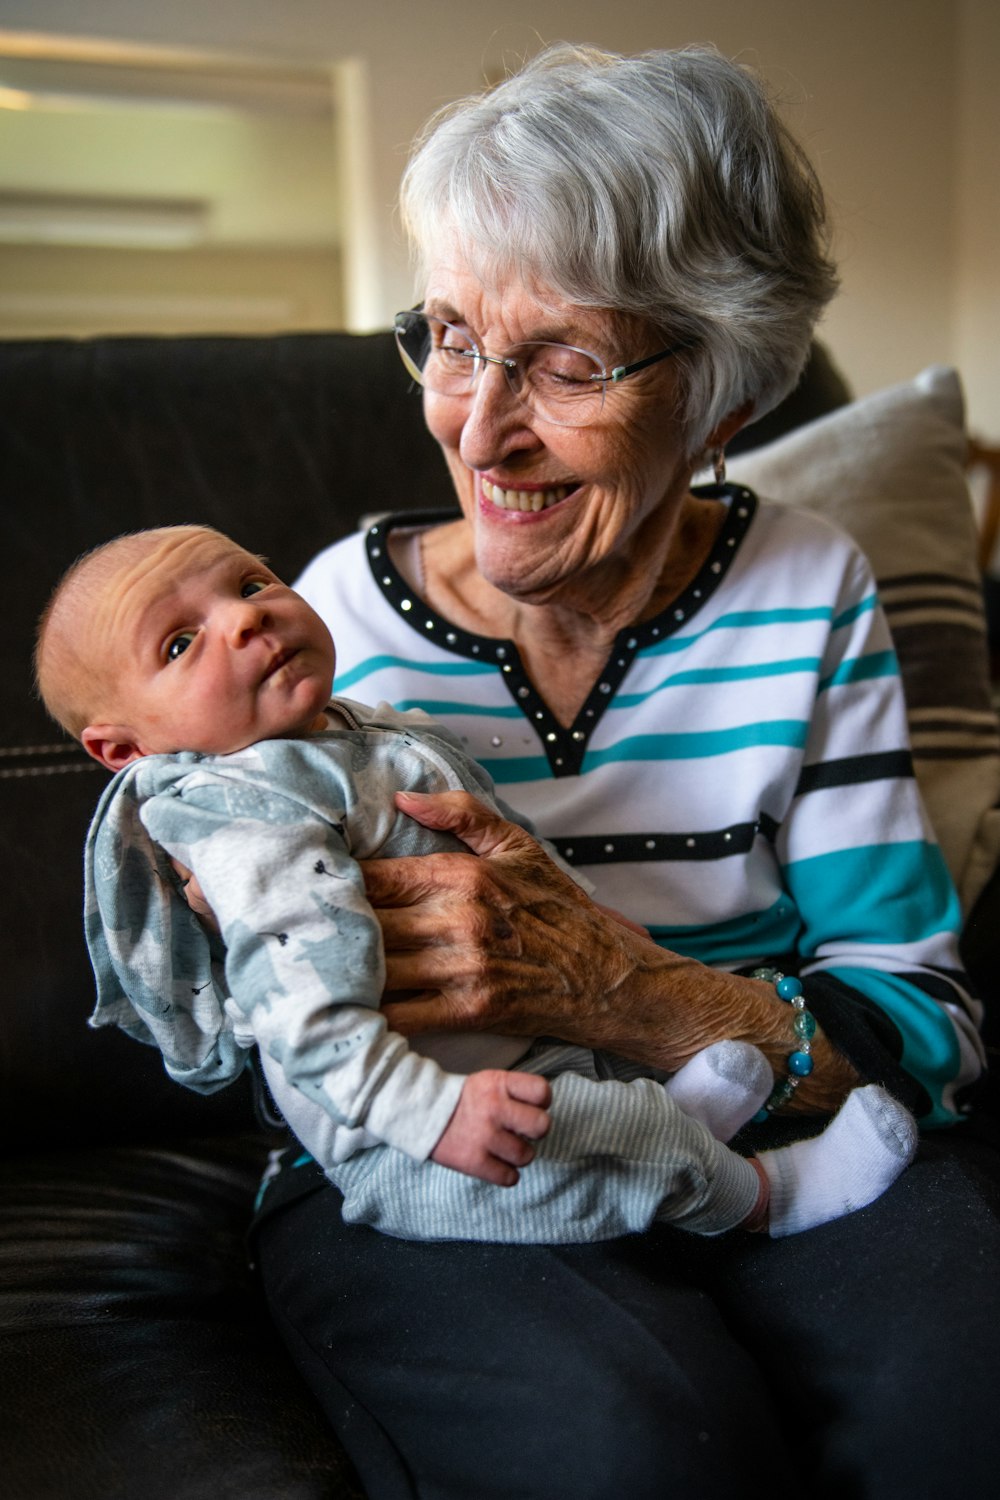 una mujer mayor sosteniendo a un bebé